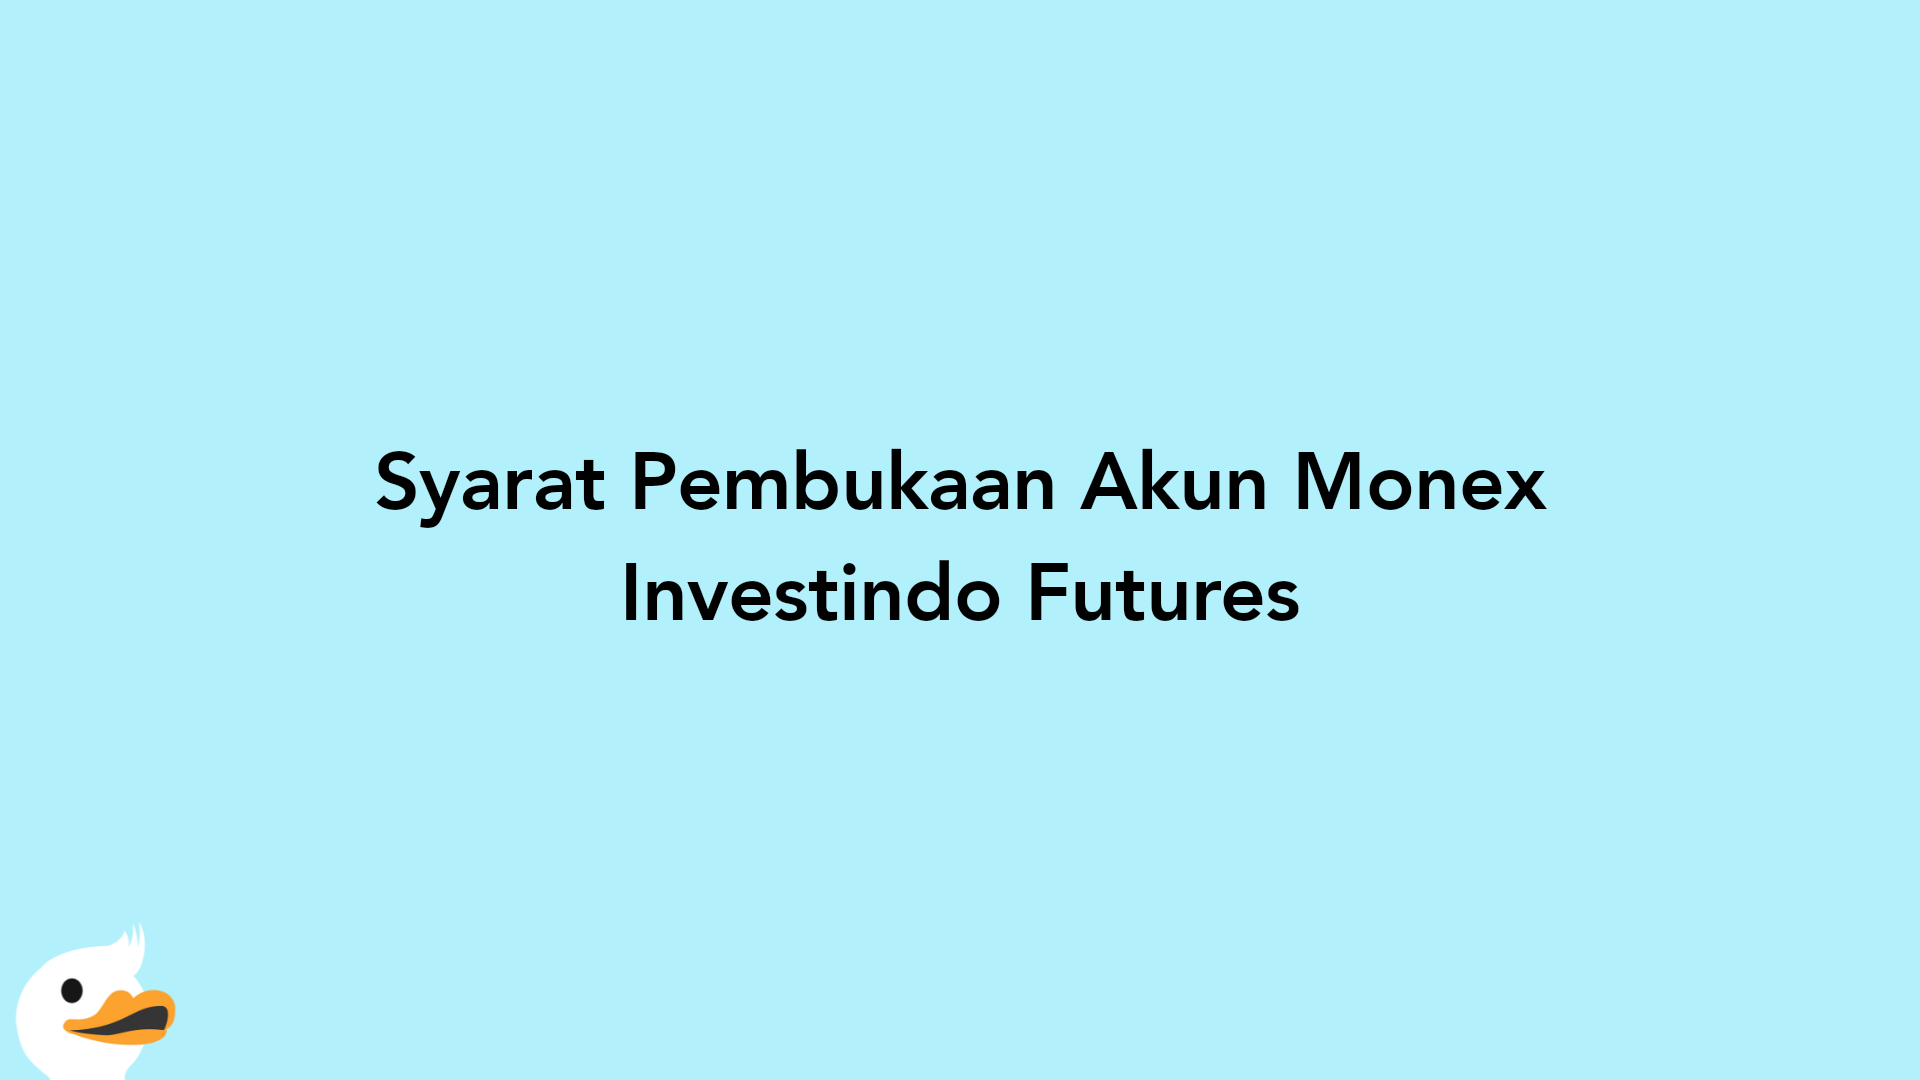 Syarat Pembukaan Akun Monex Investindo Futures